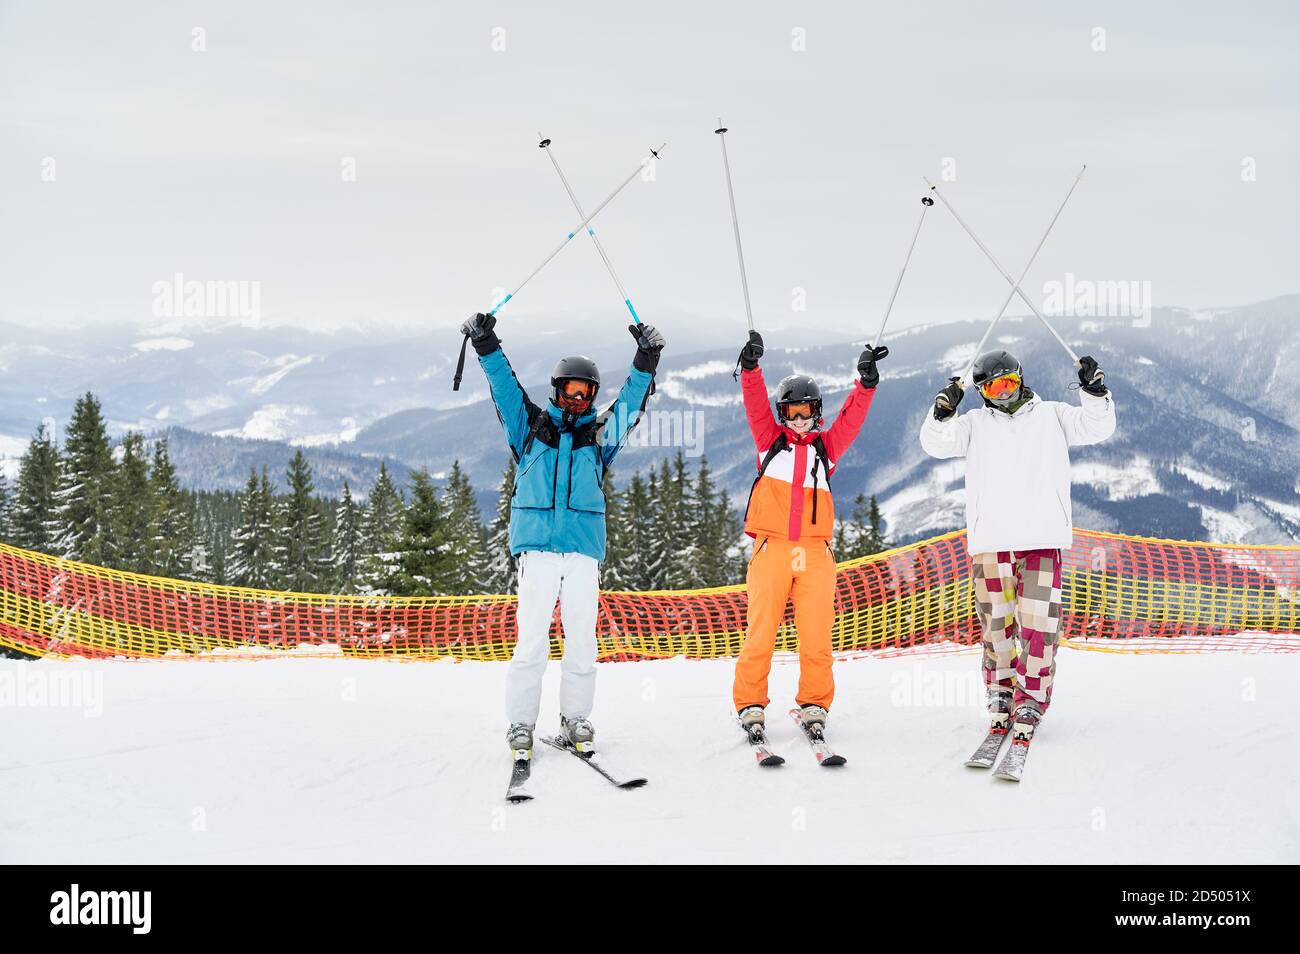 Drei fröhliche Touristen posieren auf verschneiten Pisten vor bergigen Hintergrund, halten ihre Skistöcke oben. Freunde bei guten Laune, die Spaß im Skigebiet haben. Konzept von Wintersport und Freundschaft Stockfoto